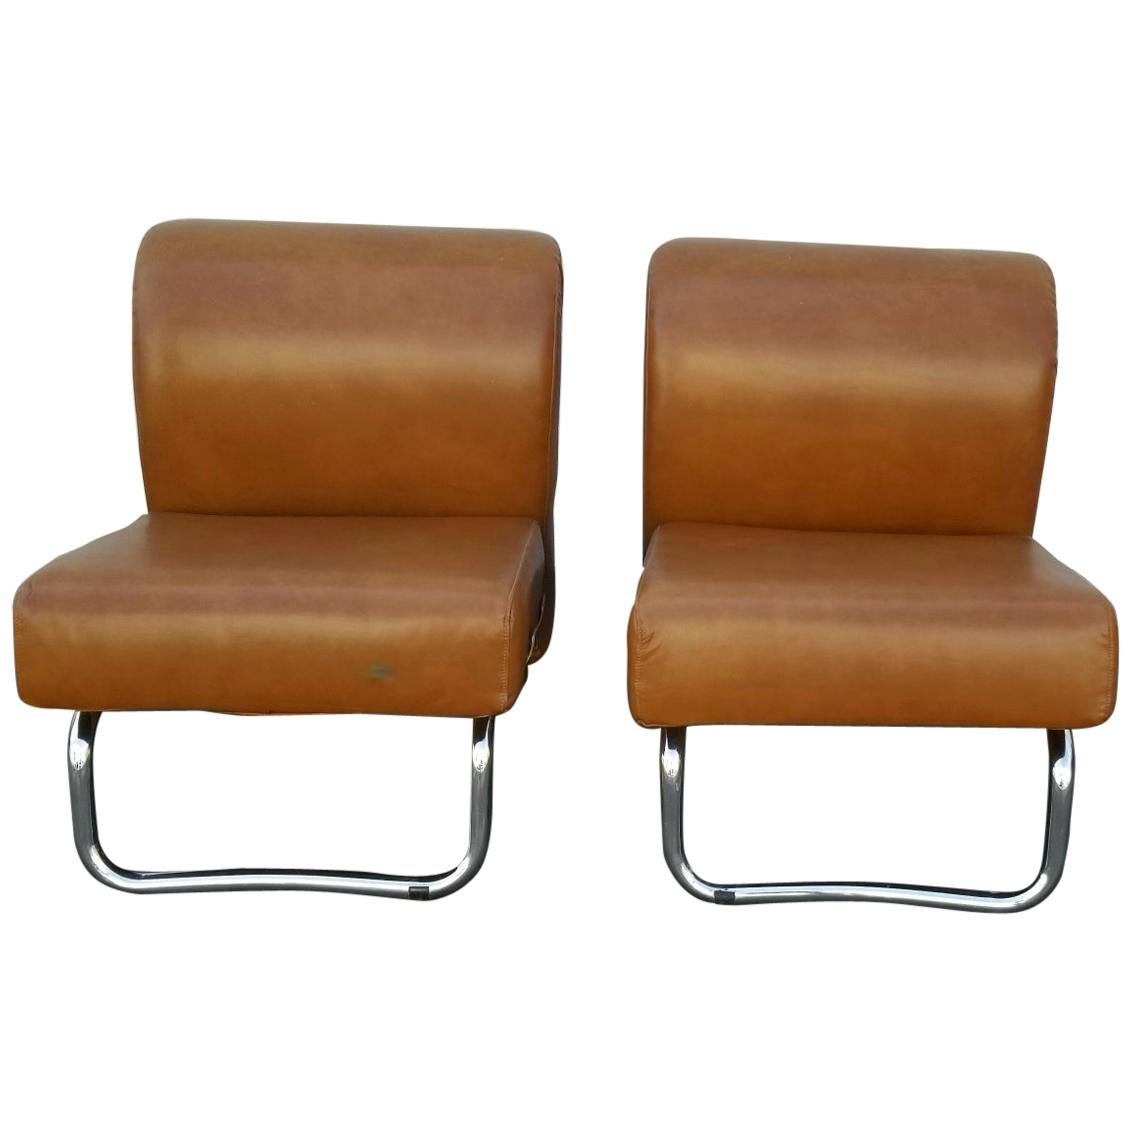 Paire de chaises en cuir italiennes du milieu du siècle dernier, datant des années 1970. Revêtement en cuir flambant neuf sur la base chromée. Italien 
 Le design et l'assise confortable sont les caractéristiques de ces chaises.
Les frais